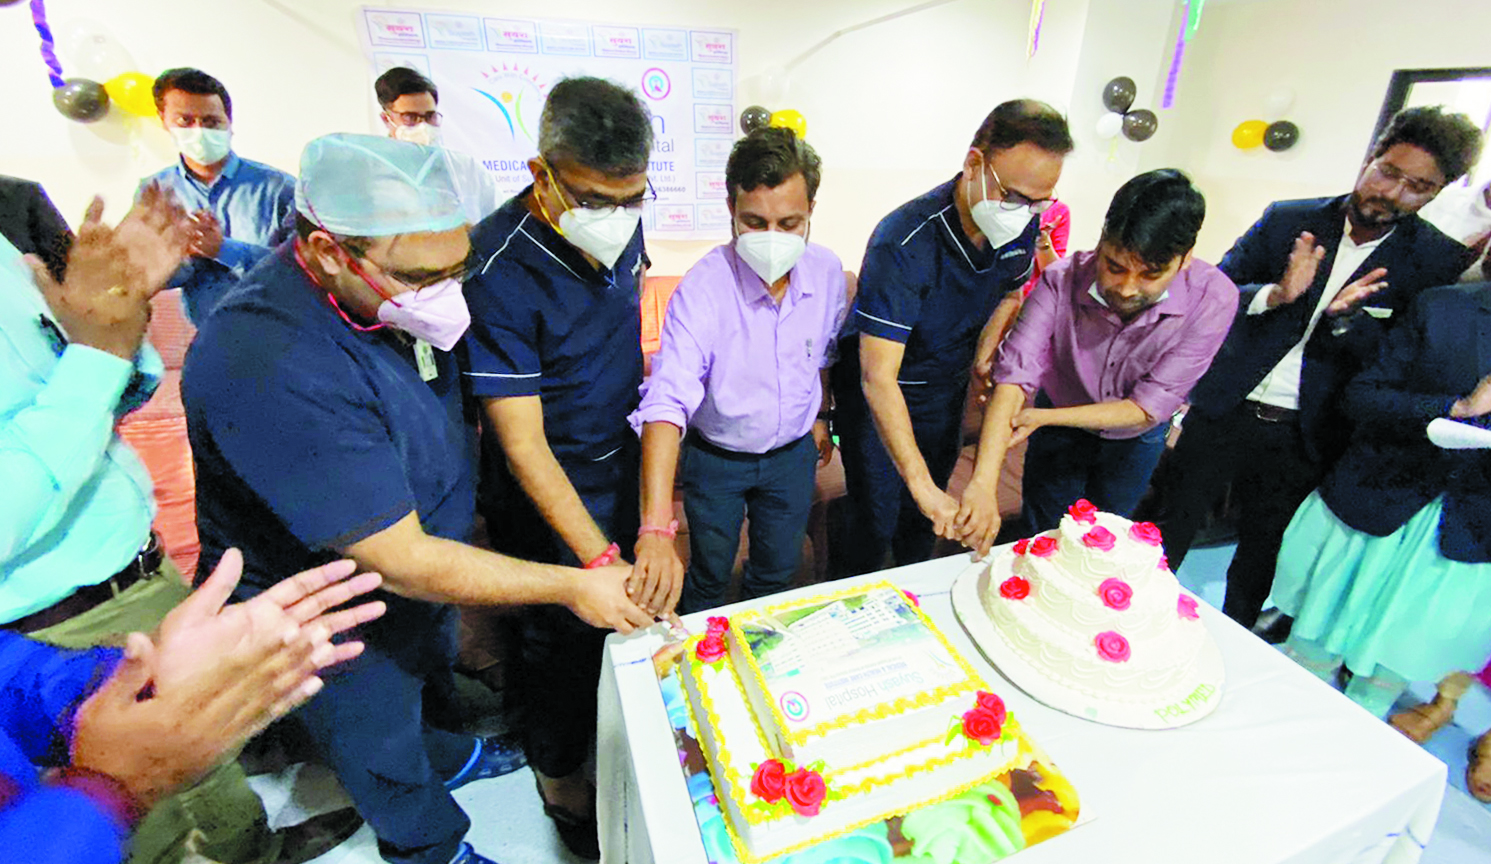 सुयश हॉस्पिटल ने मनाई 12वीं वर्षगांठ, 2 वर्षों में 1000+ मरीजों का सफल इलाज